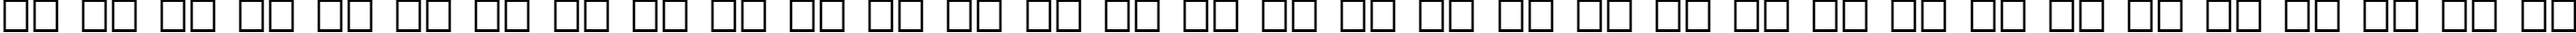 Пример написания русского алфавита шрифтом Skidoos Cyr Italic